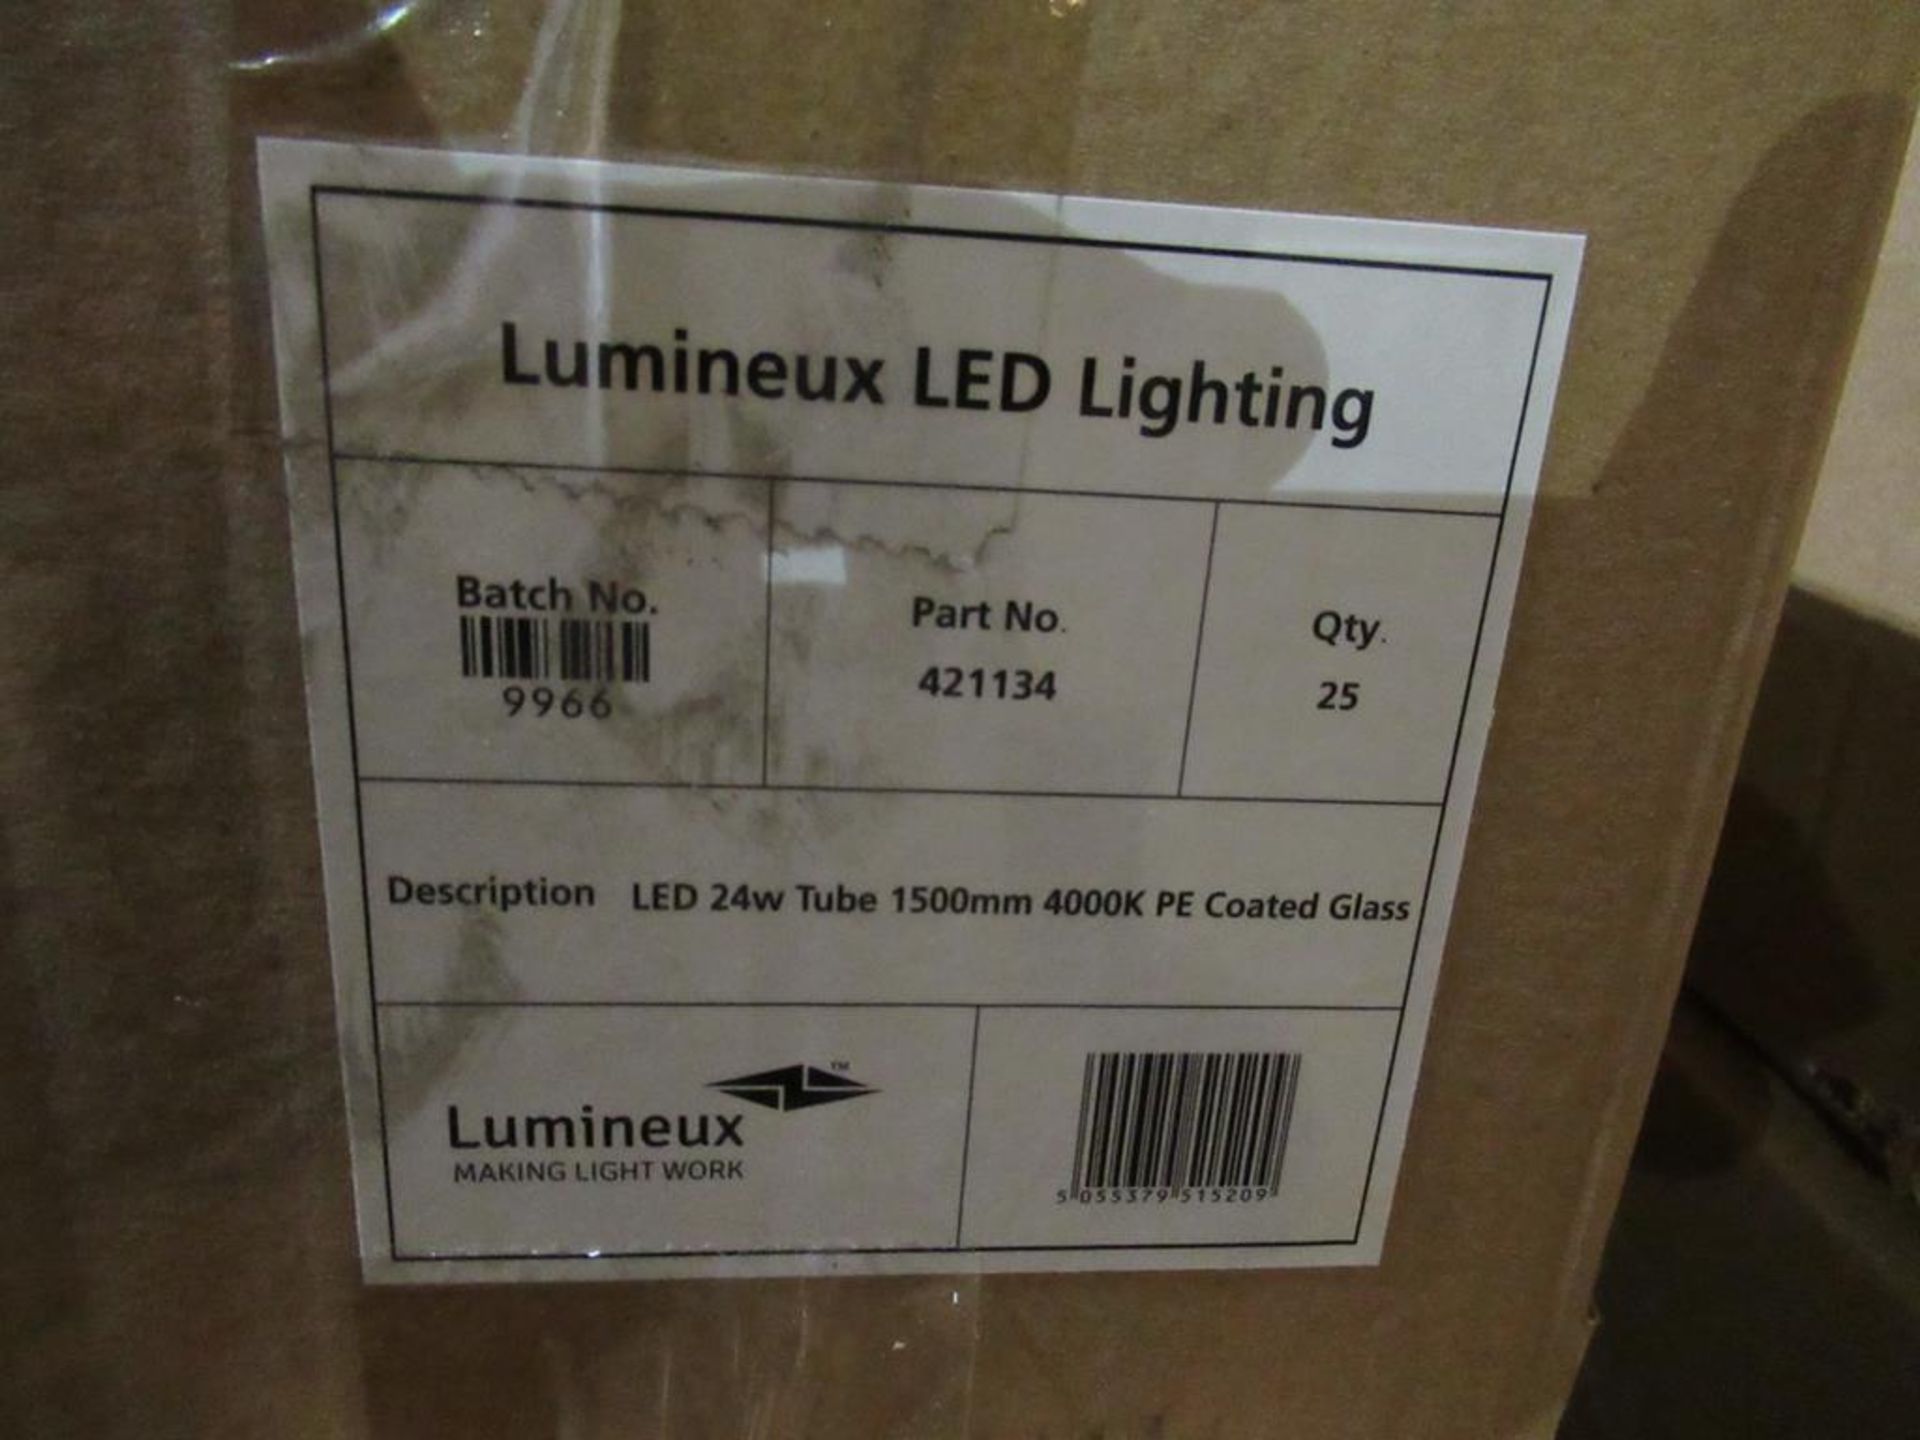 50 x Lumineux LED 24W Tube 1500mm 4000K PE Coated Glass OEM Trade Price £835 - Image 2 of 5